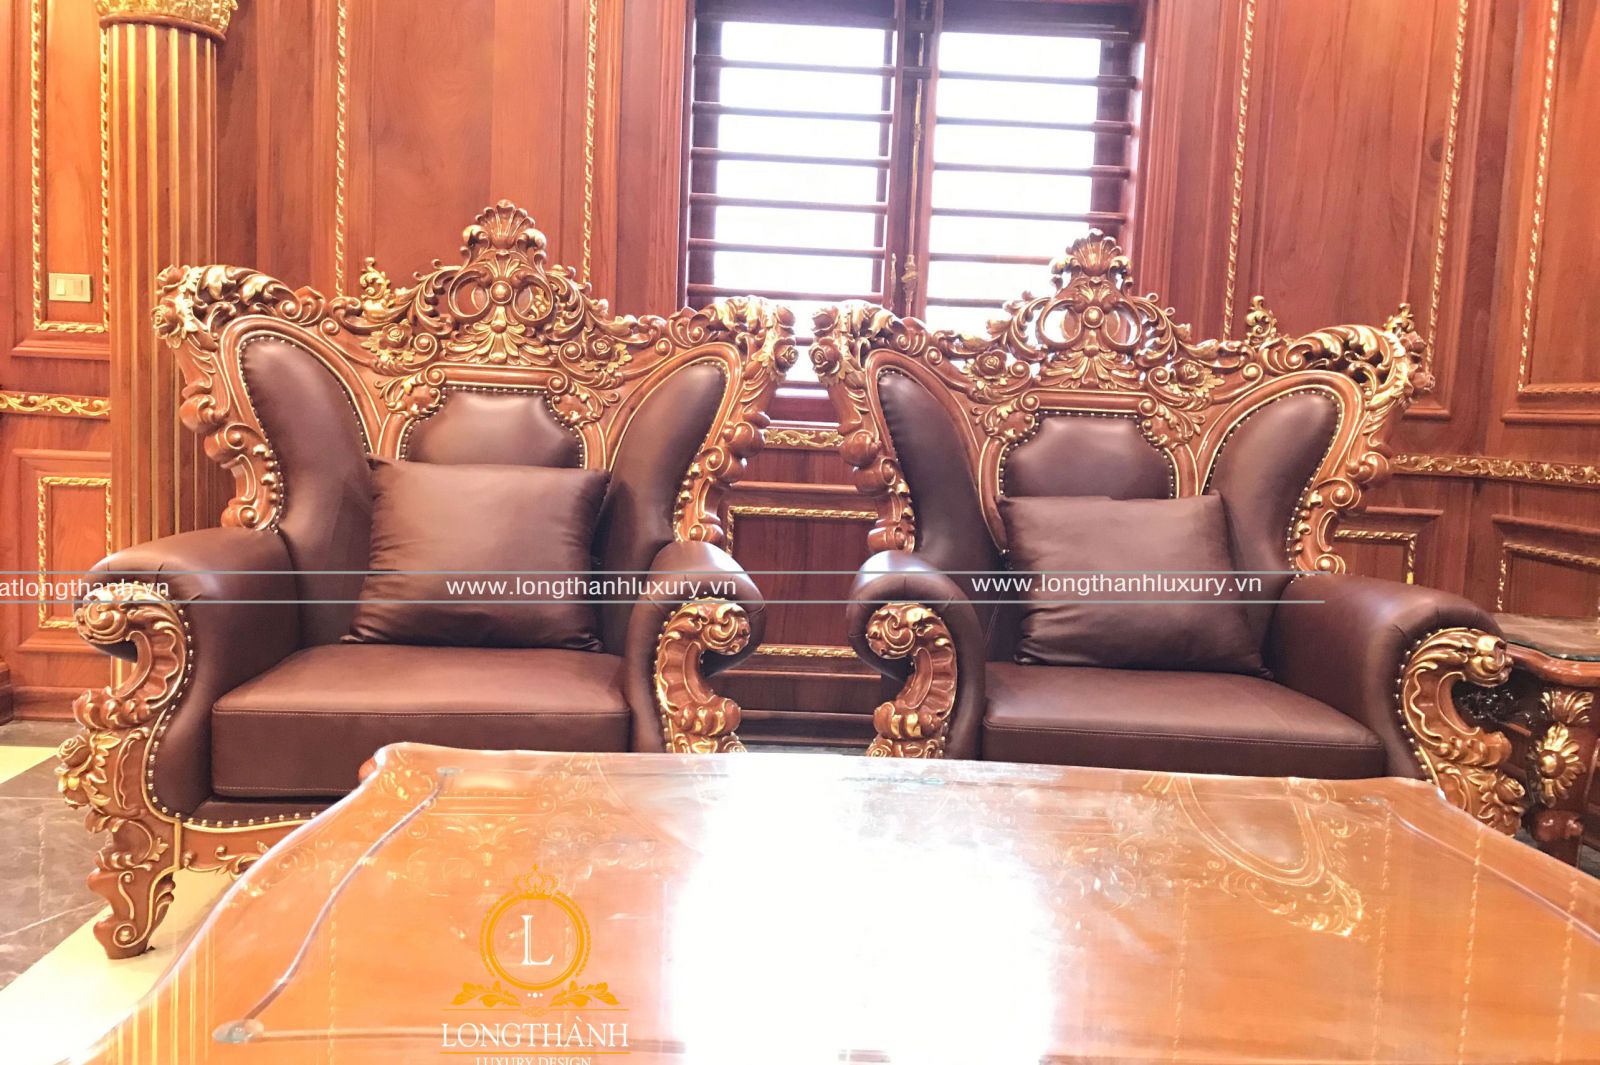 Mẫu sofa dát vàng sang trọng được trưng bày tại showoom tạo ấn tượng mạnh cho khách hàng